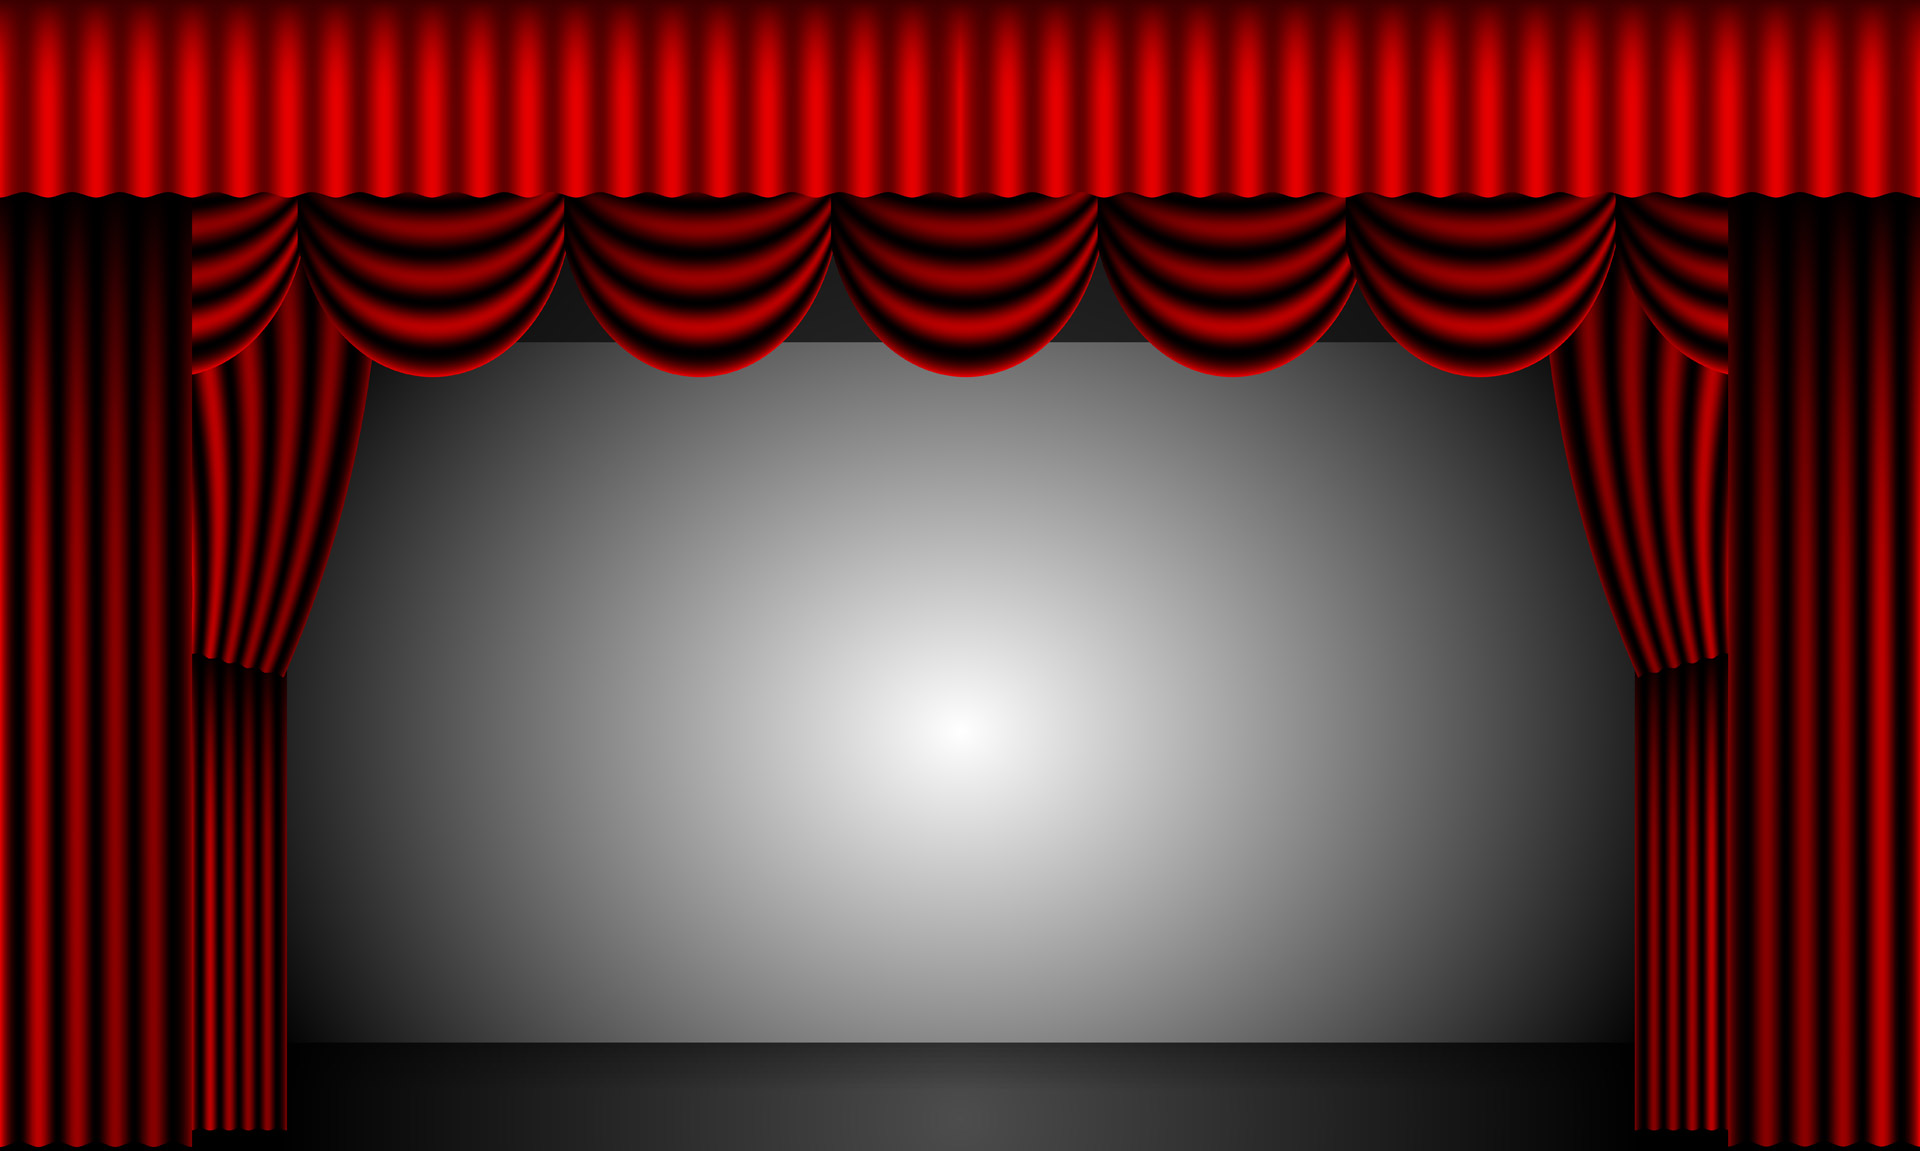 theatre-curtains-650d5869564ed.jpg